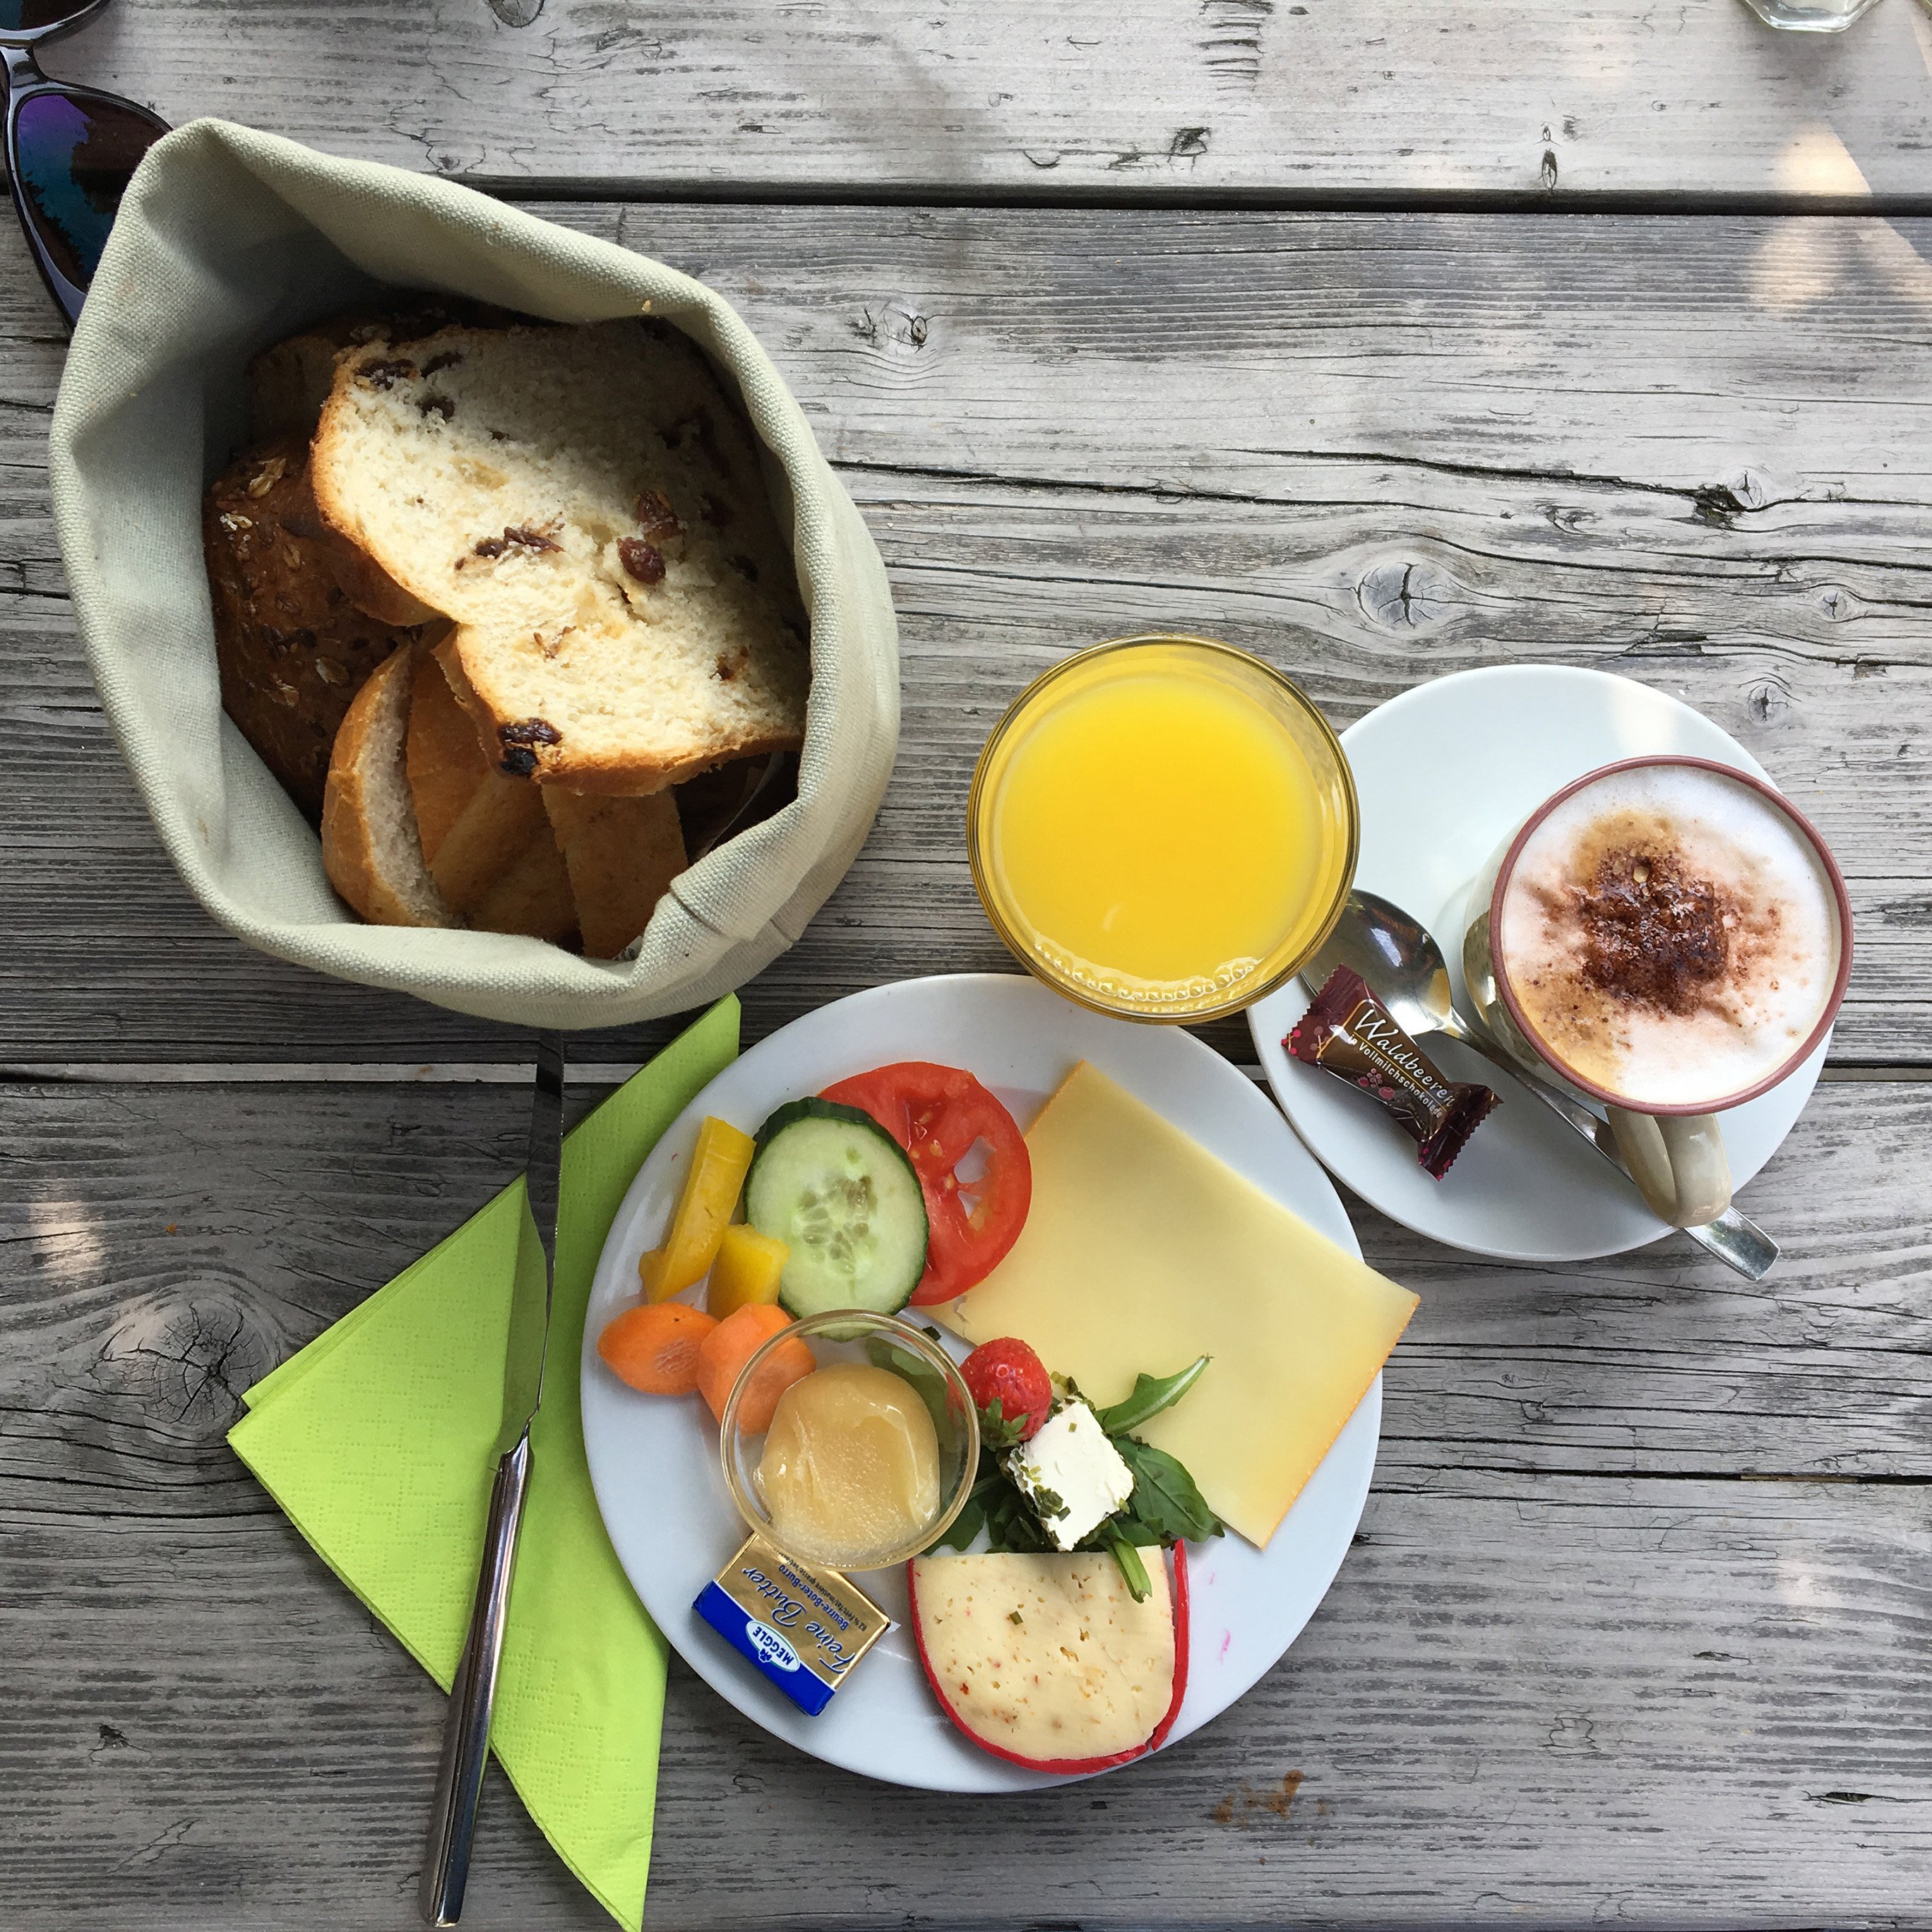 Das Bild zeigt einen gefüllten Frühstücksteller mit Capuccino und Brot